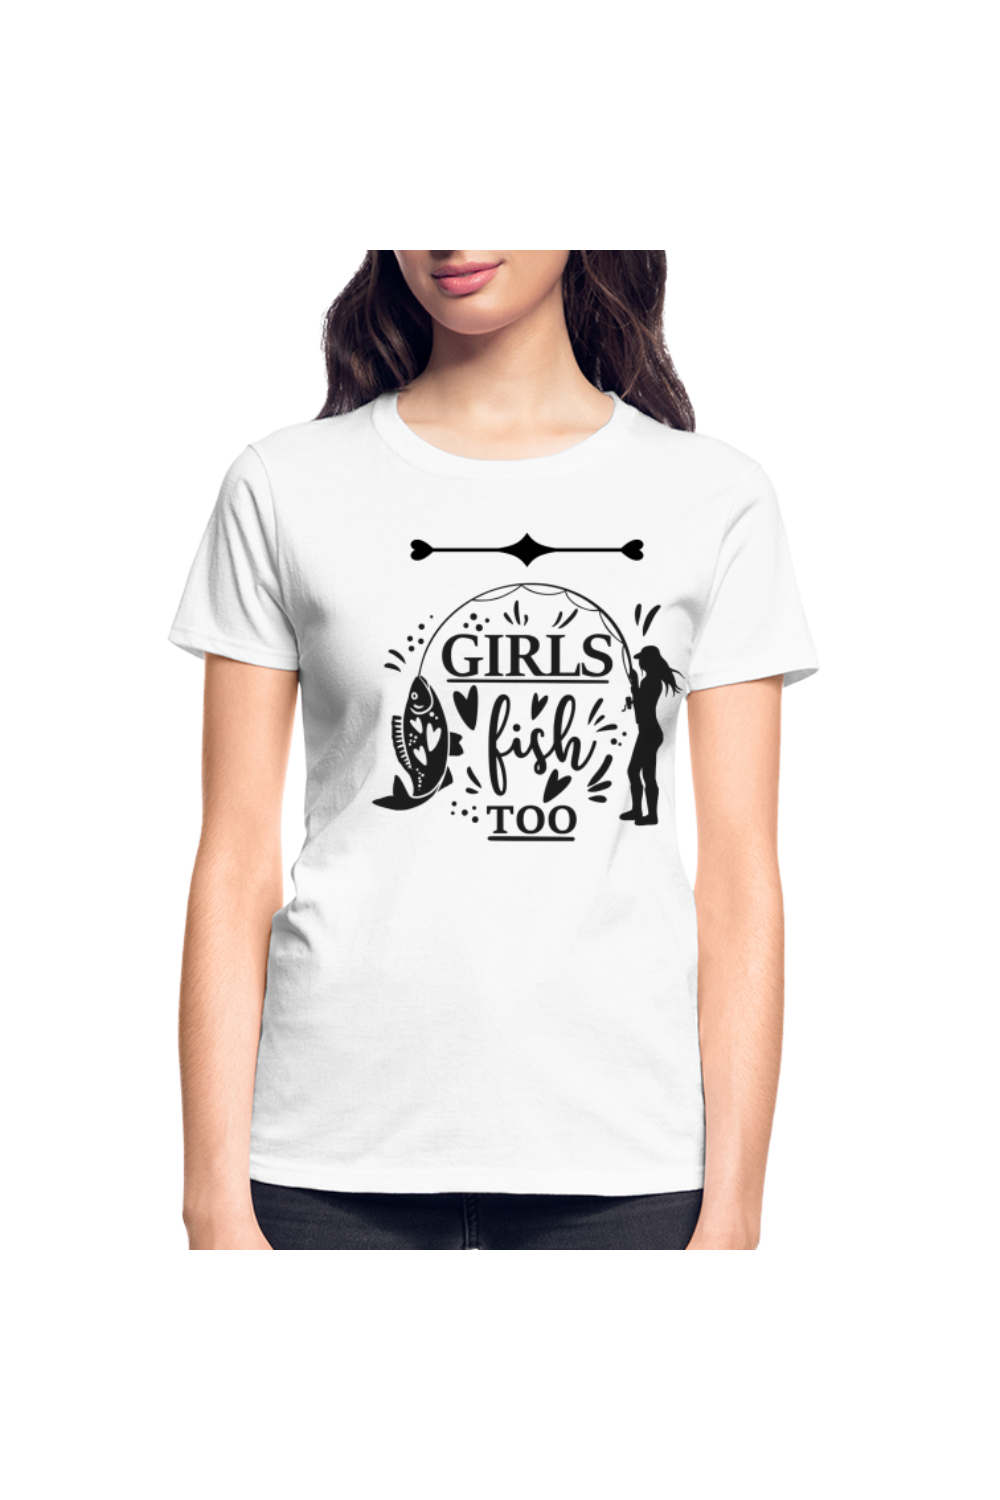 Girls Fish Too Women Short Sleeve T-Shirt - white